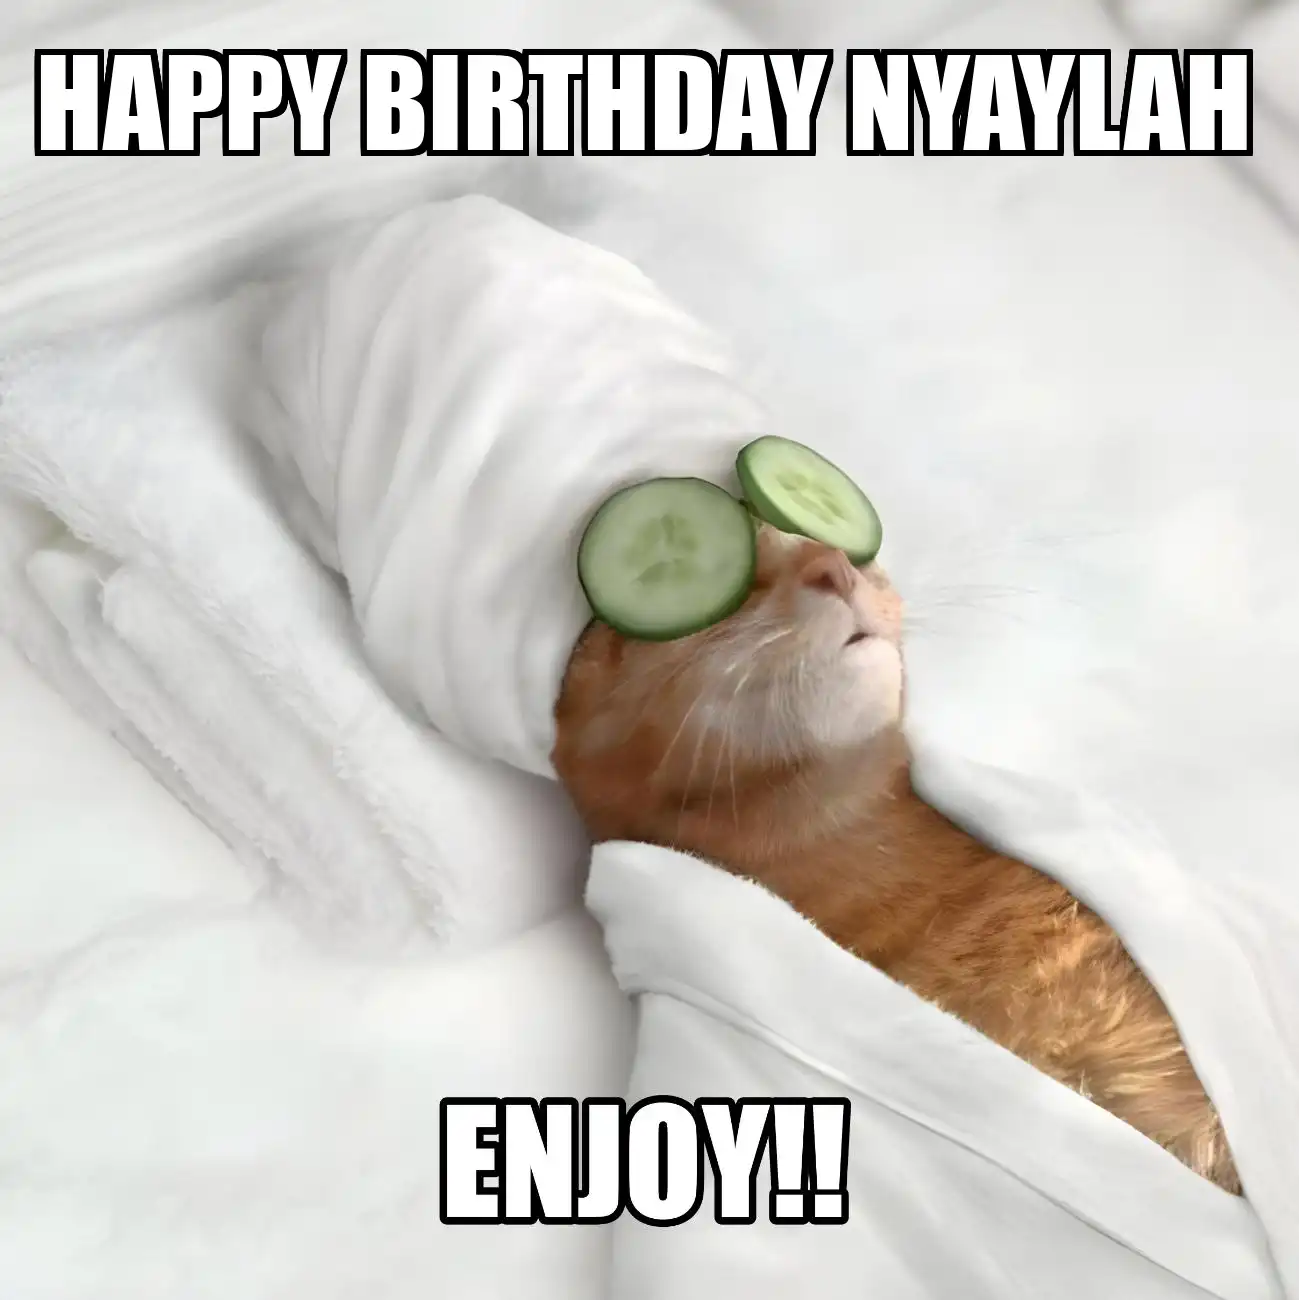 Happy Birthday Nyaylah Enjoy Cat Meme